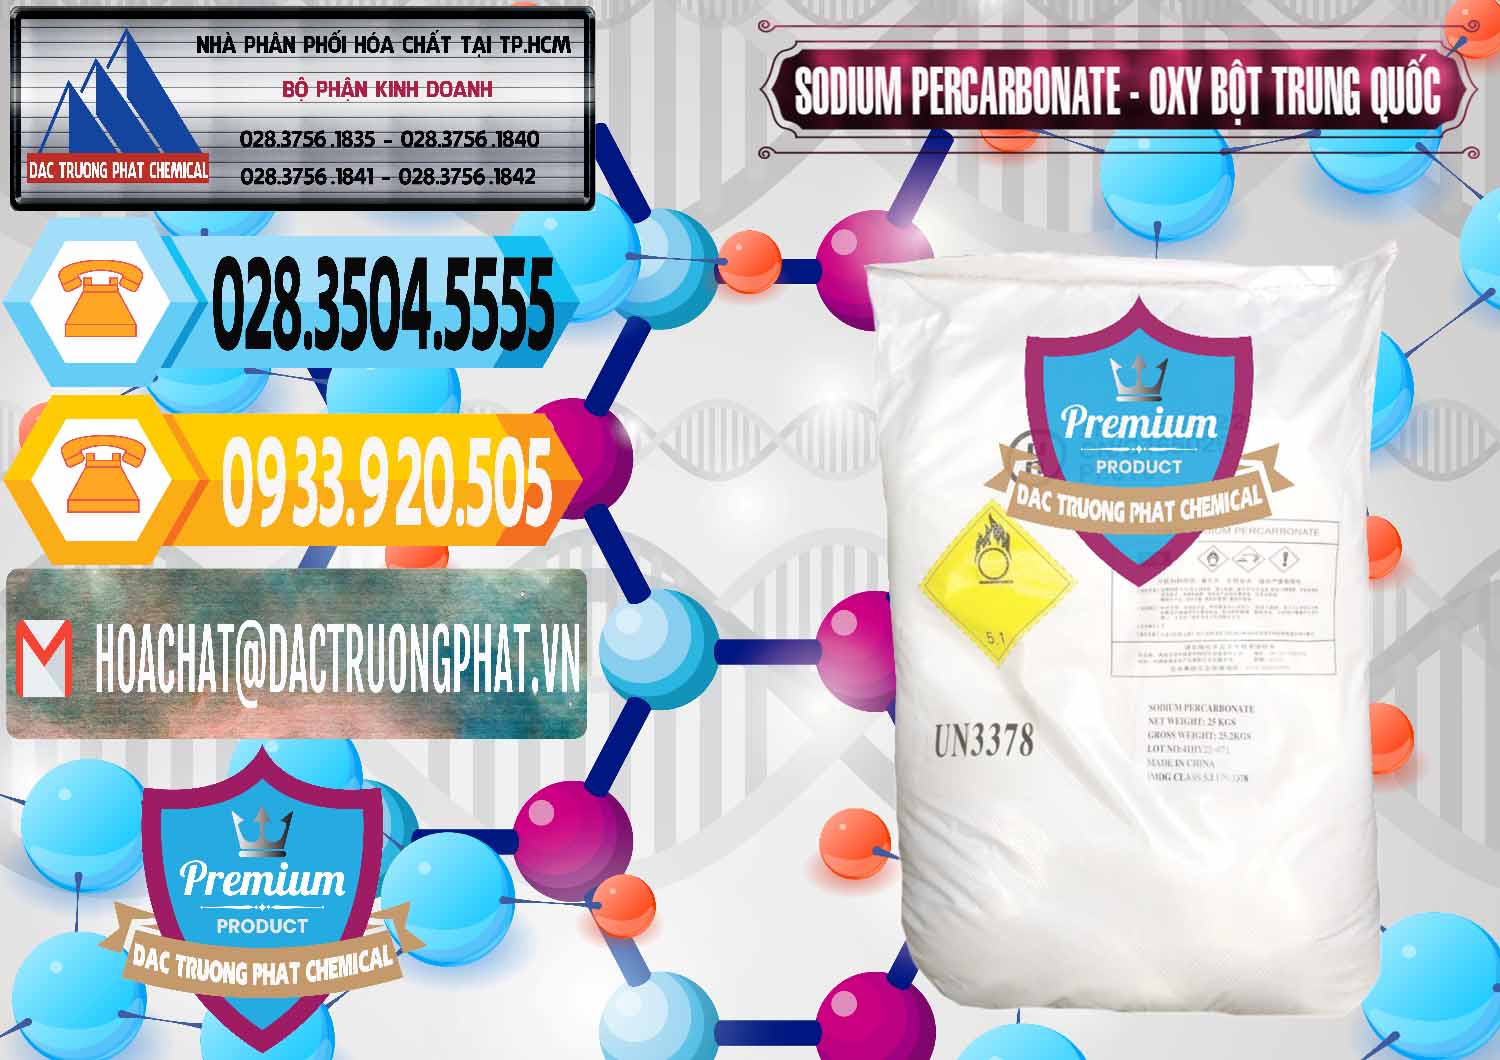 Nơi chuyên phân phối và bán Sodium Percarbonate Dạng Bột Trung Quốc China - 0390 - Đơn vị chuyên cung cấp _ kinh doanh hóa chất tại TP.HCM - hoachattayrua.net